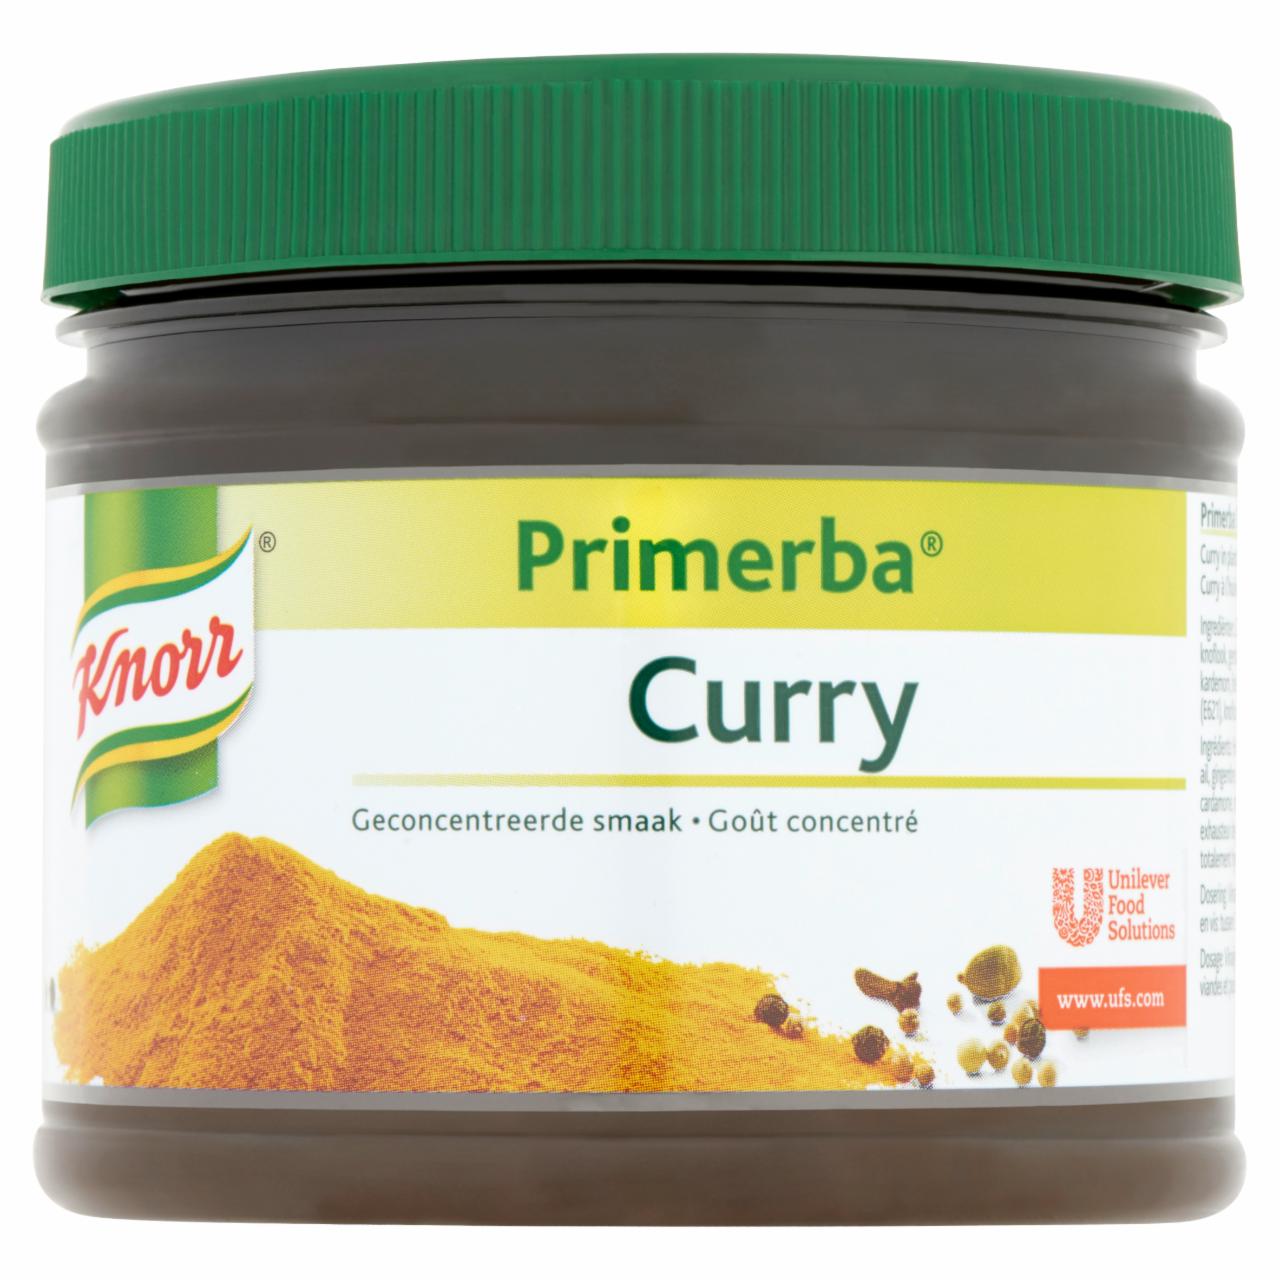 Képek - Knorr Primerba curry fűszerkeverék növényi olajban 340 g